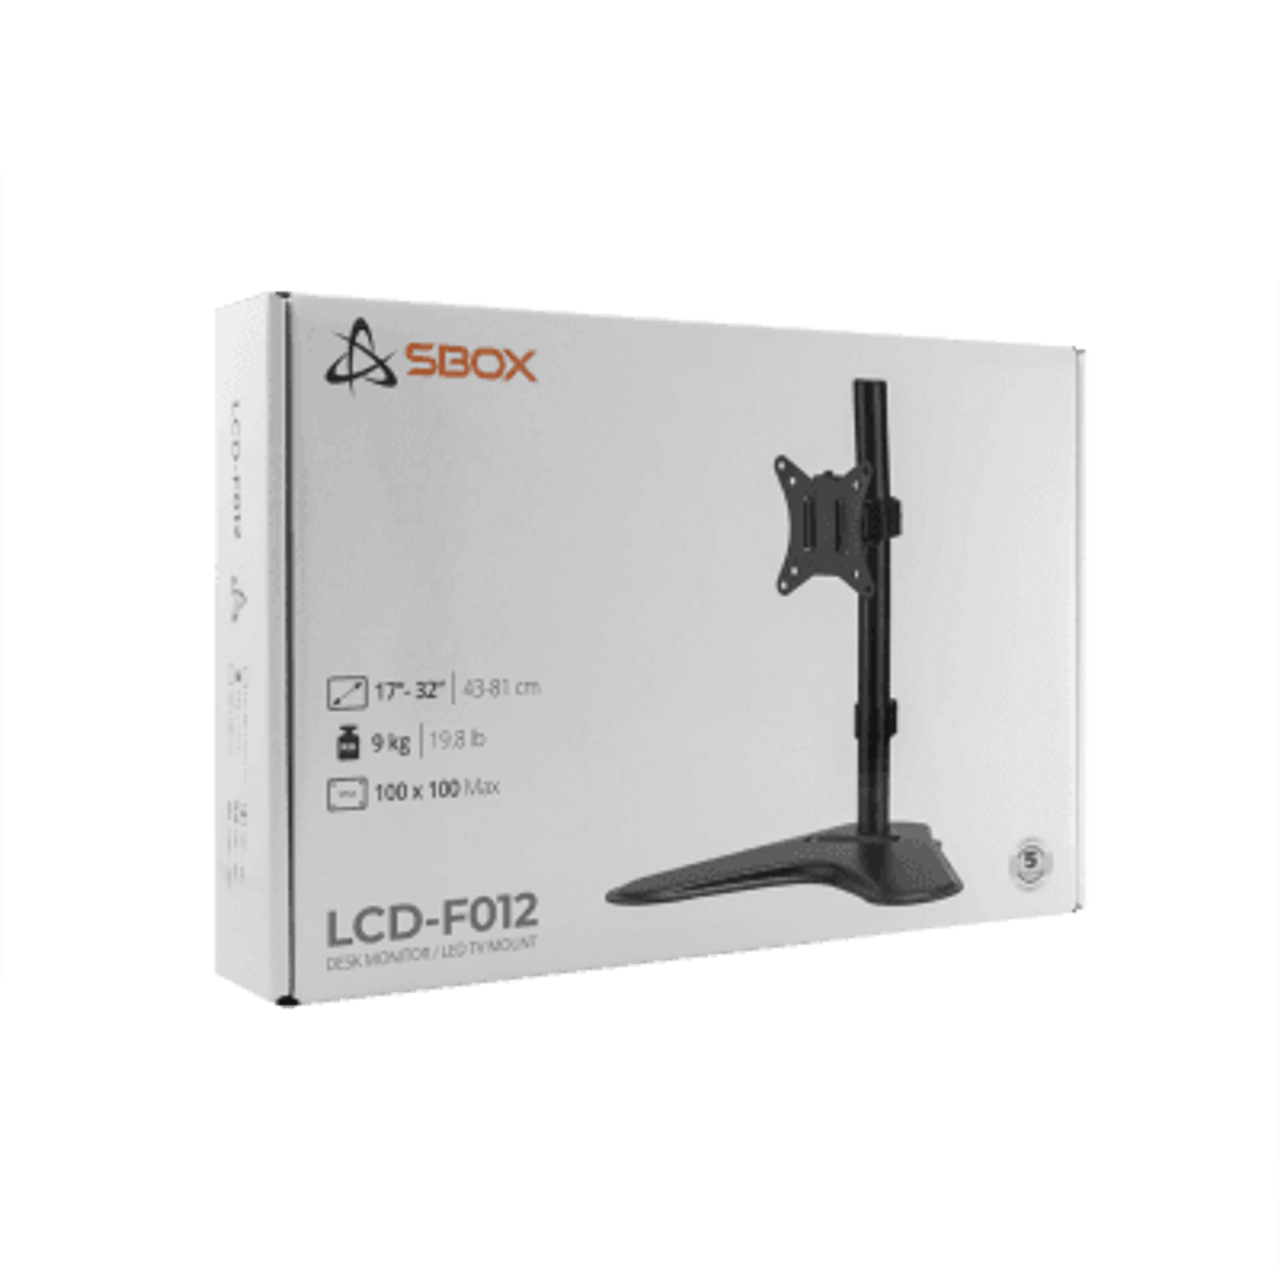 MOUNT SBOX LCD-F012-2 (17-32"/9kg/100x100) LCD-F012-2